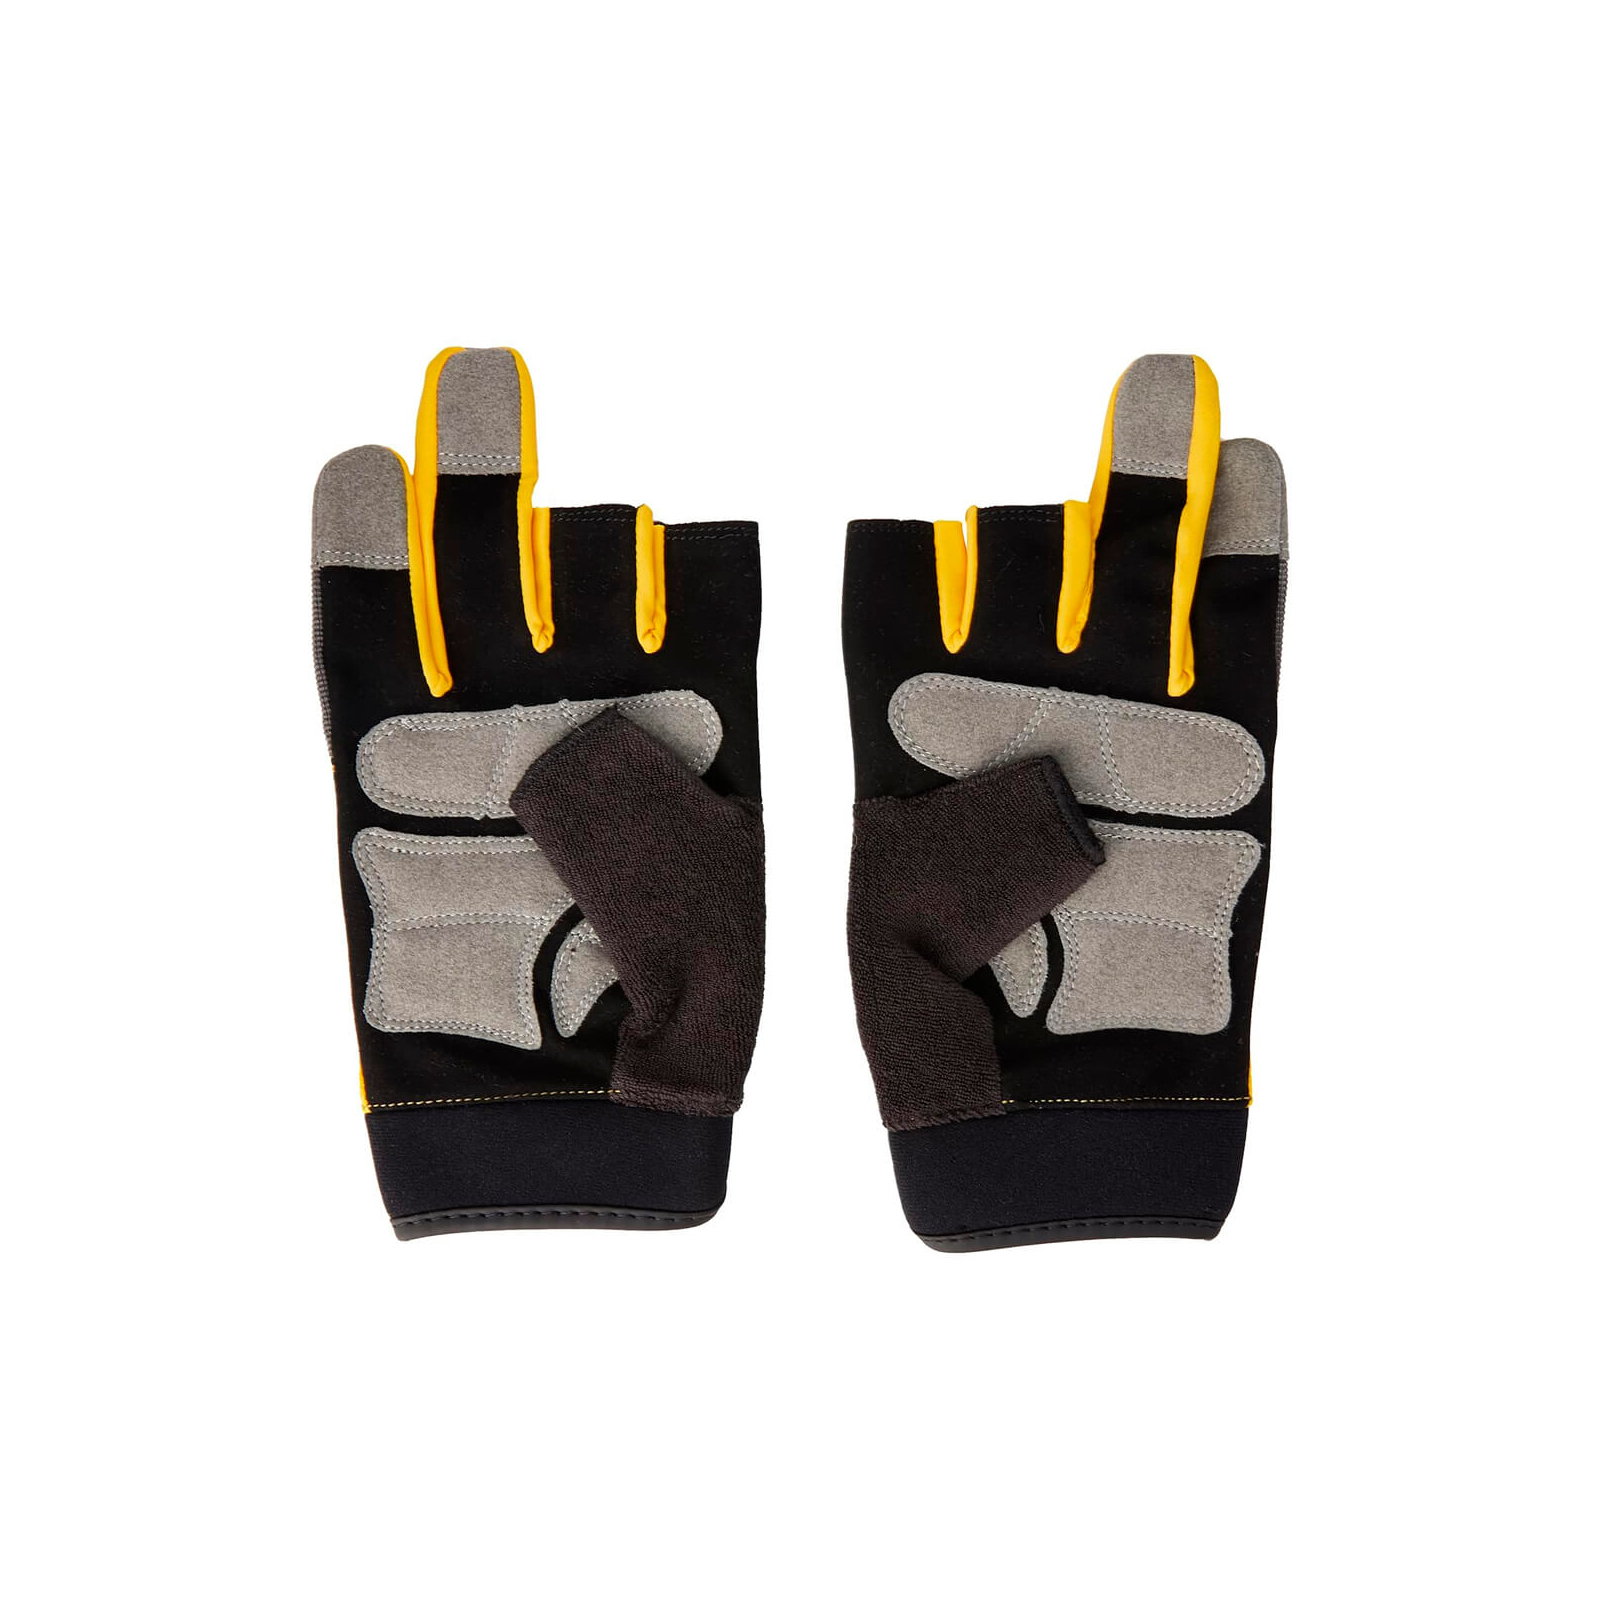 Защитные перчатки DeWALT частично открытые, разм. L/9, с накладками на ладони (DPG214L) изображение 3